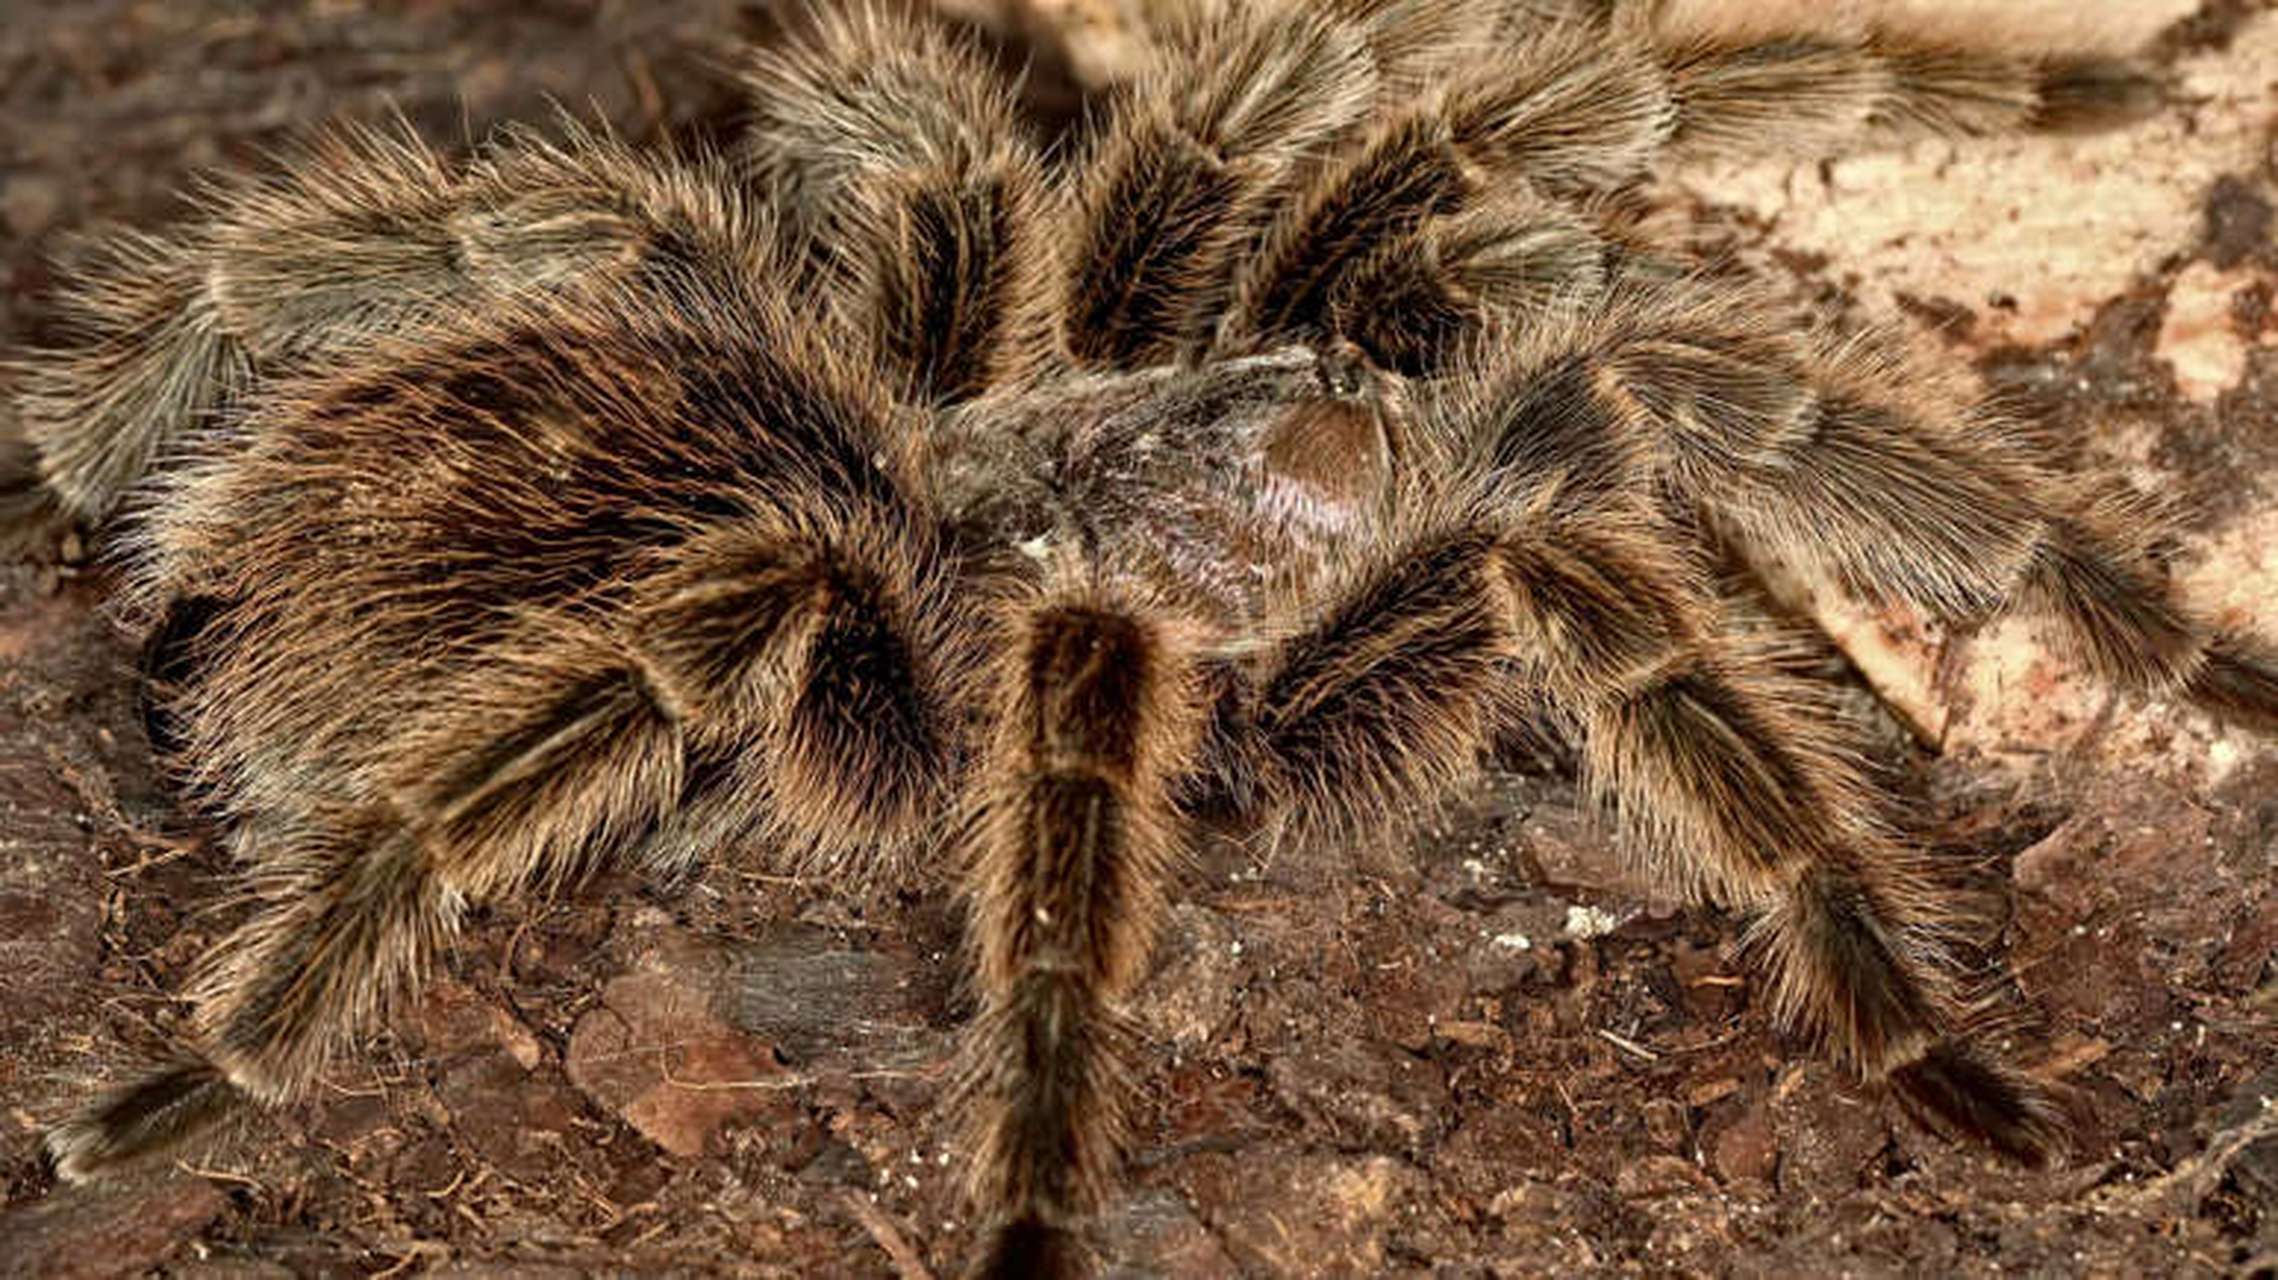 自然界关于蜘蛛的冷知识:世界最大的蜘蛛系列  巴西巨型赤褐狼蛛 